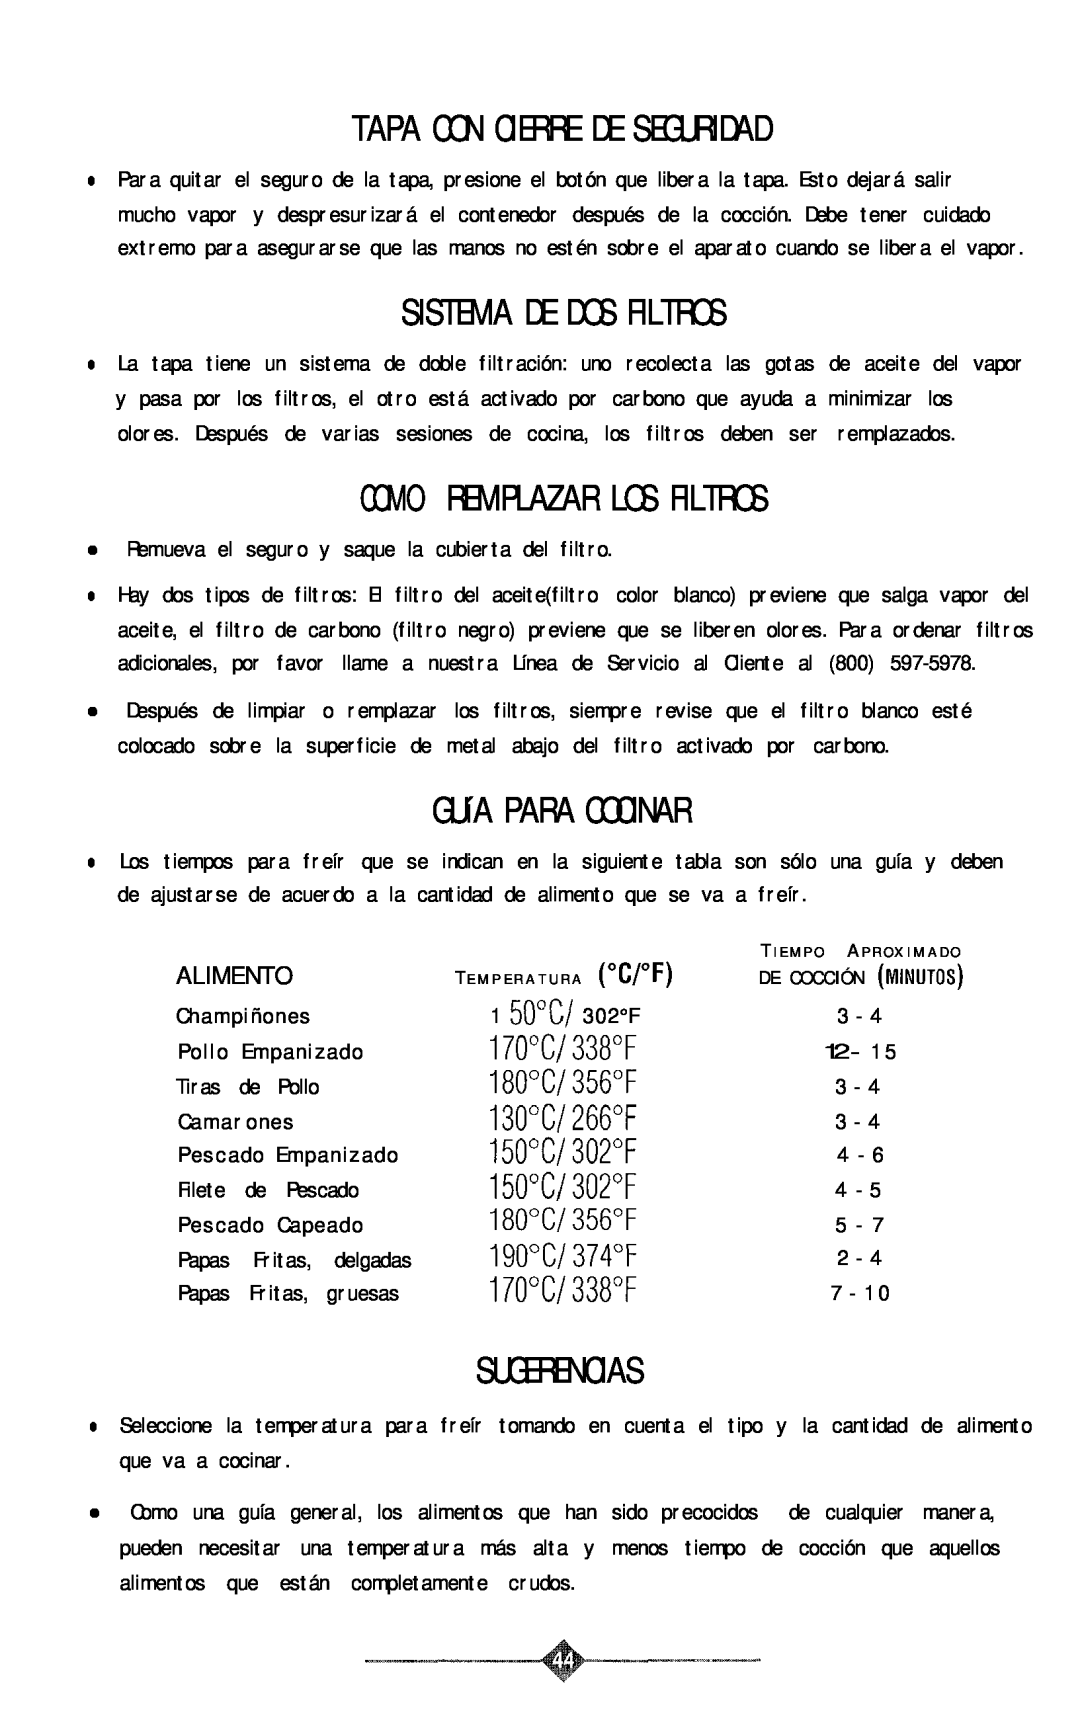 Sunbeam 3241, 3240 manual Sistema De Dos Filtros, GUíA PARA COCINAR, Sugerencias, Tapa Con Cierre De Seguridad 